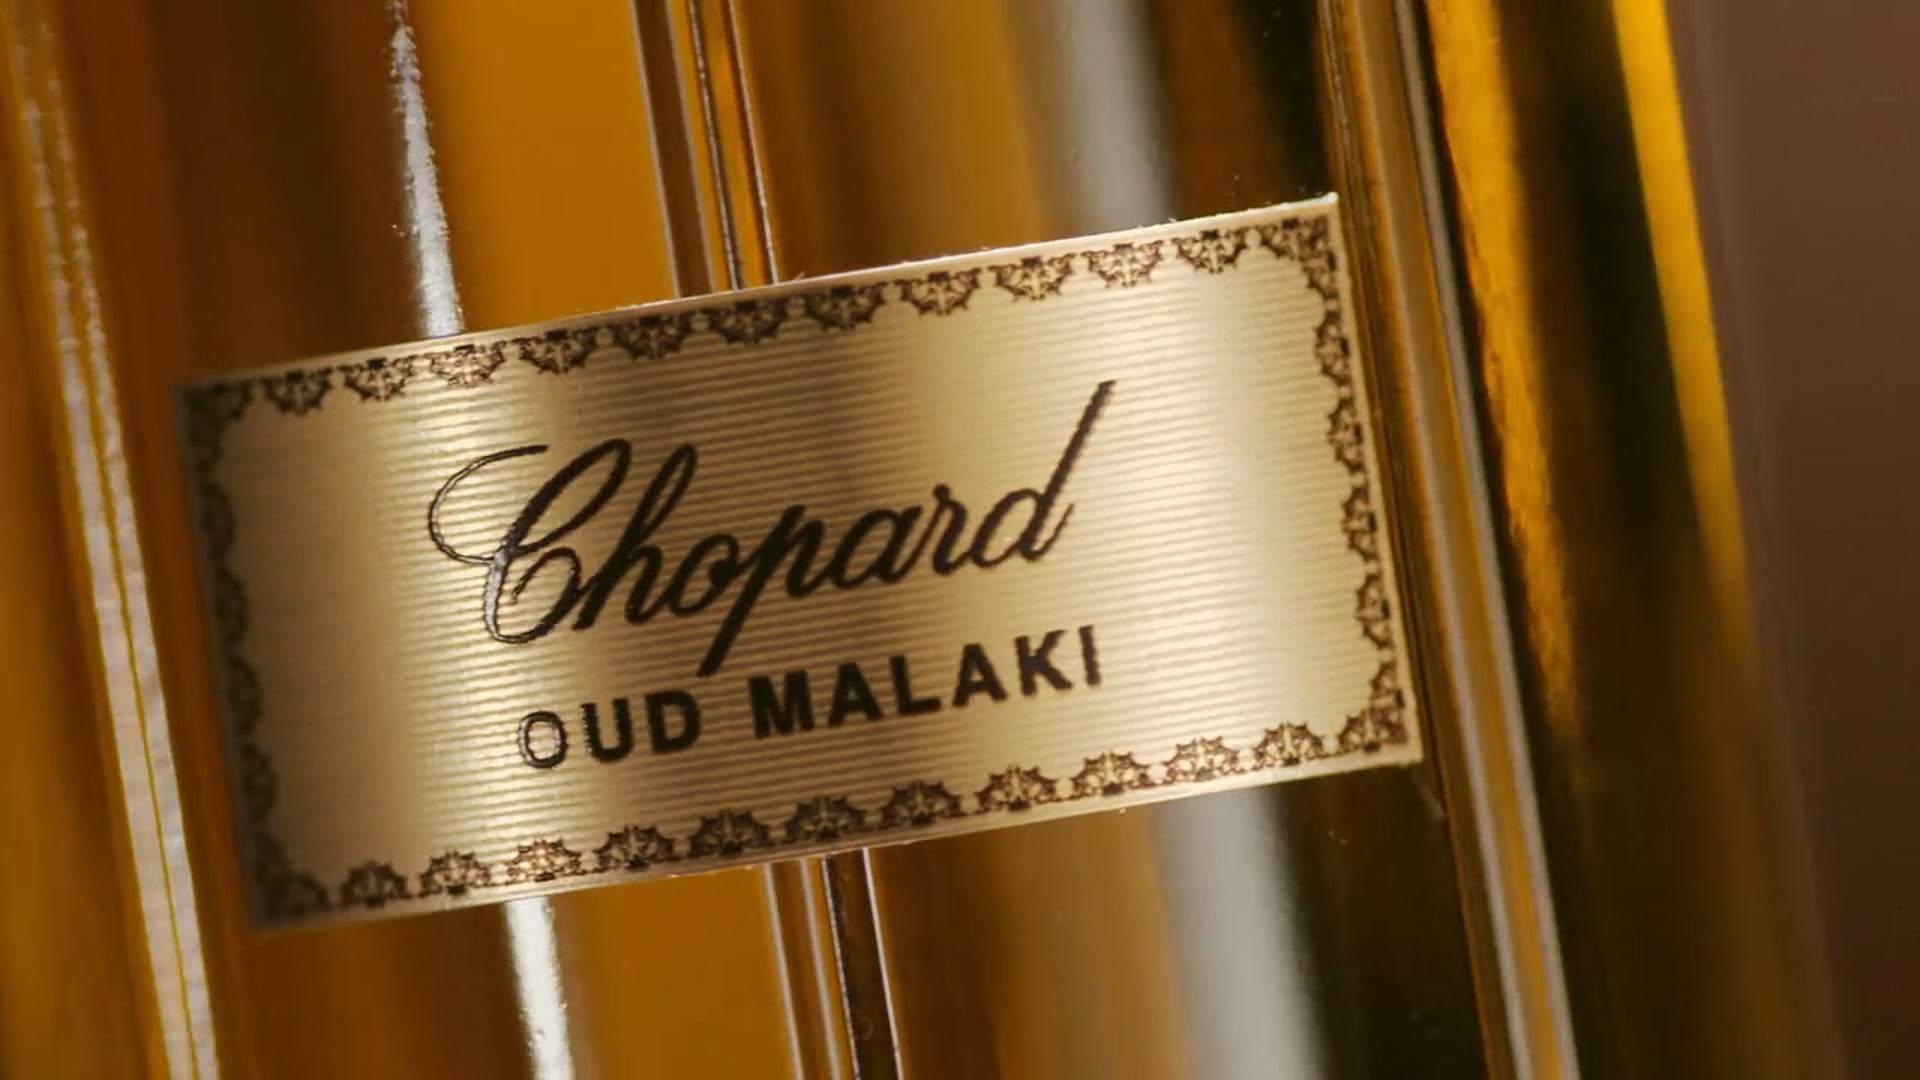 Chopard collection MALAKI